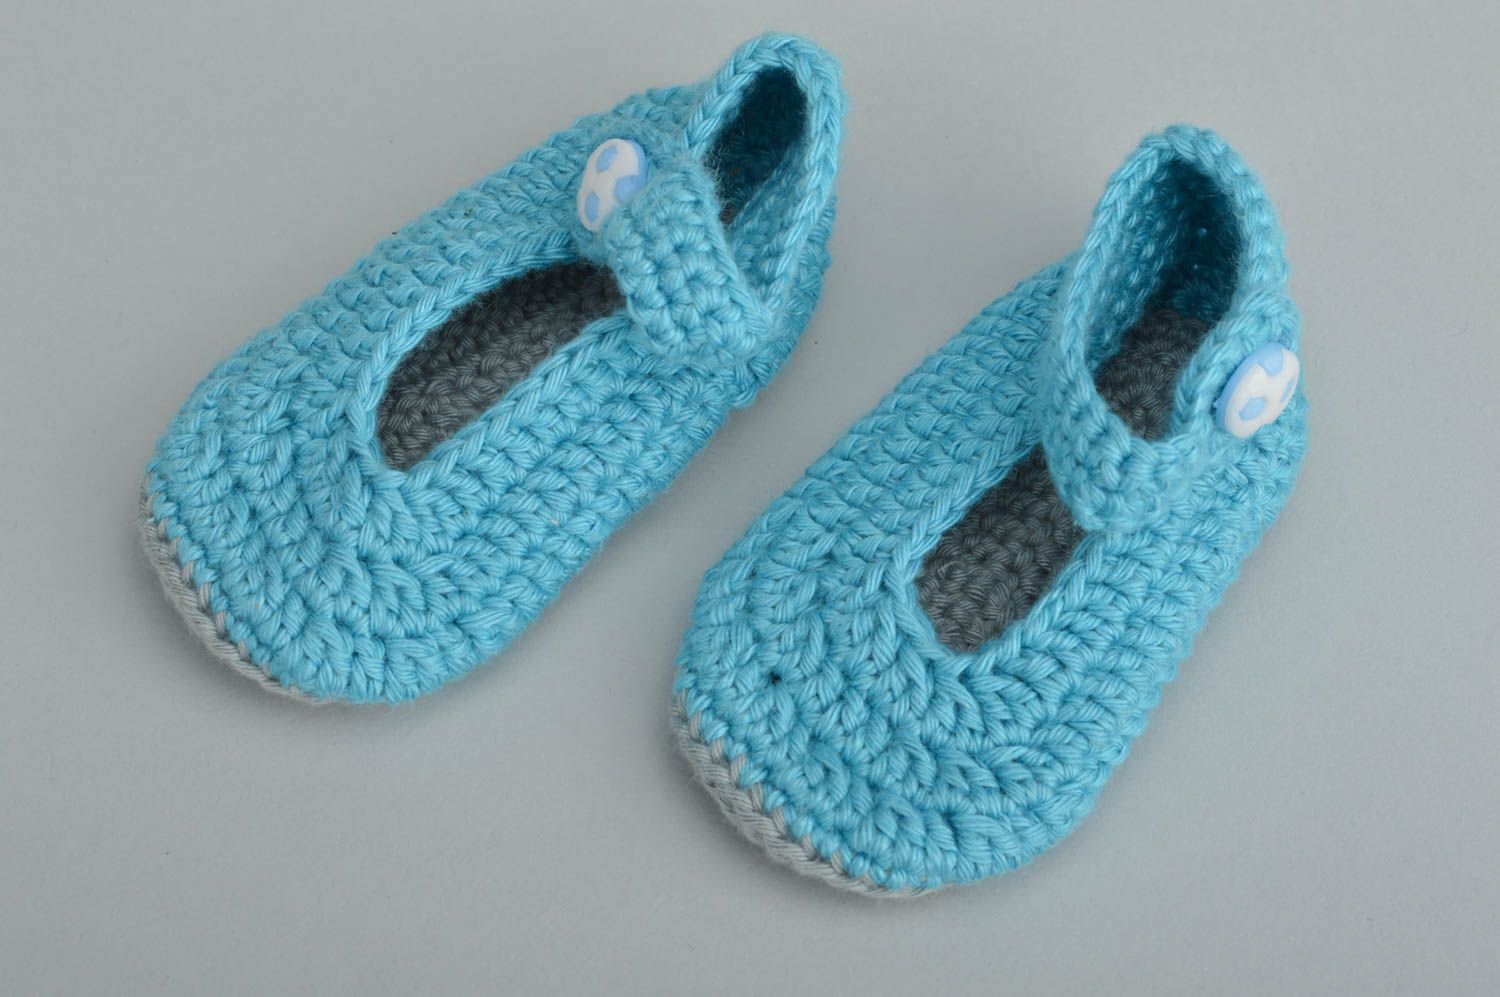 Chaussons pour bébé bleu ciel en coton naturel faits main originaux jolis photo 5